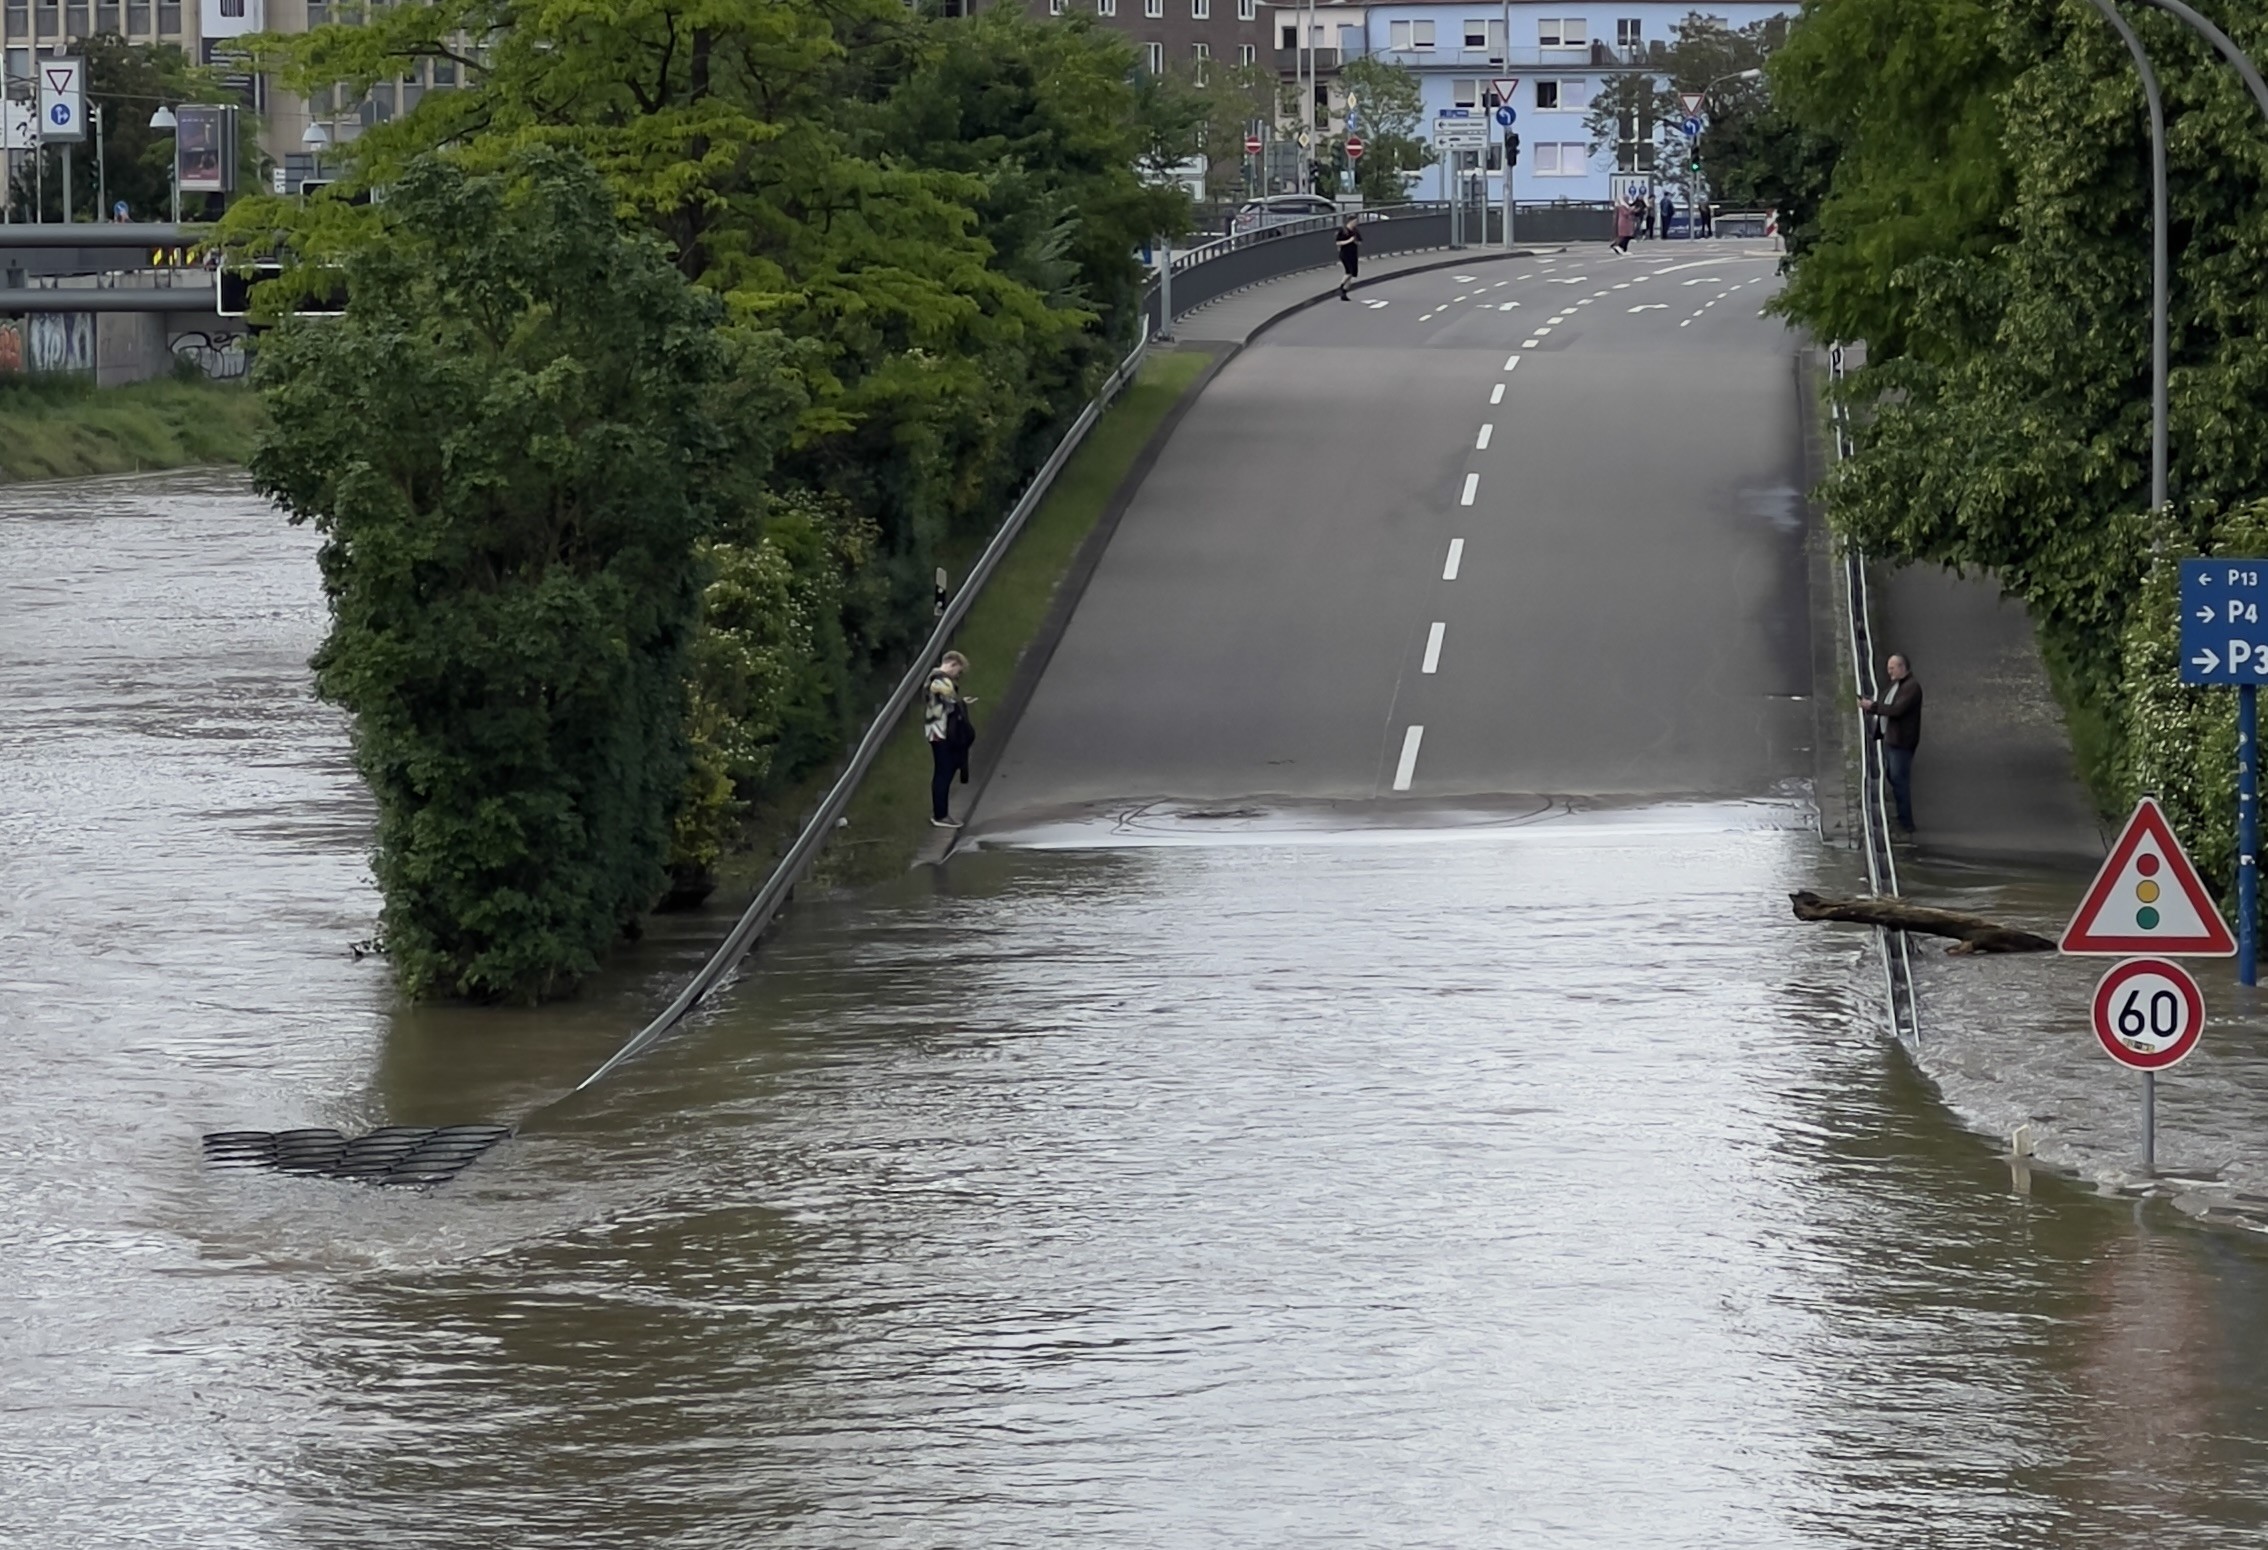 Mehr über den Artikel erfahren +++ PRESSEEINLADUNG: Aktion am Hochwasser von Fridays for Future: Ausblenden der Klimakrise fahrlässig! +++ 